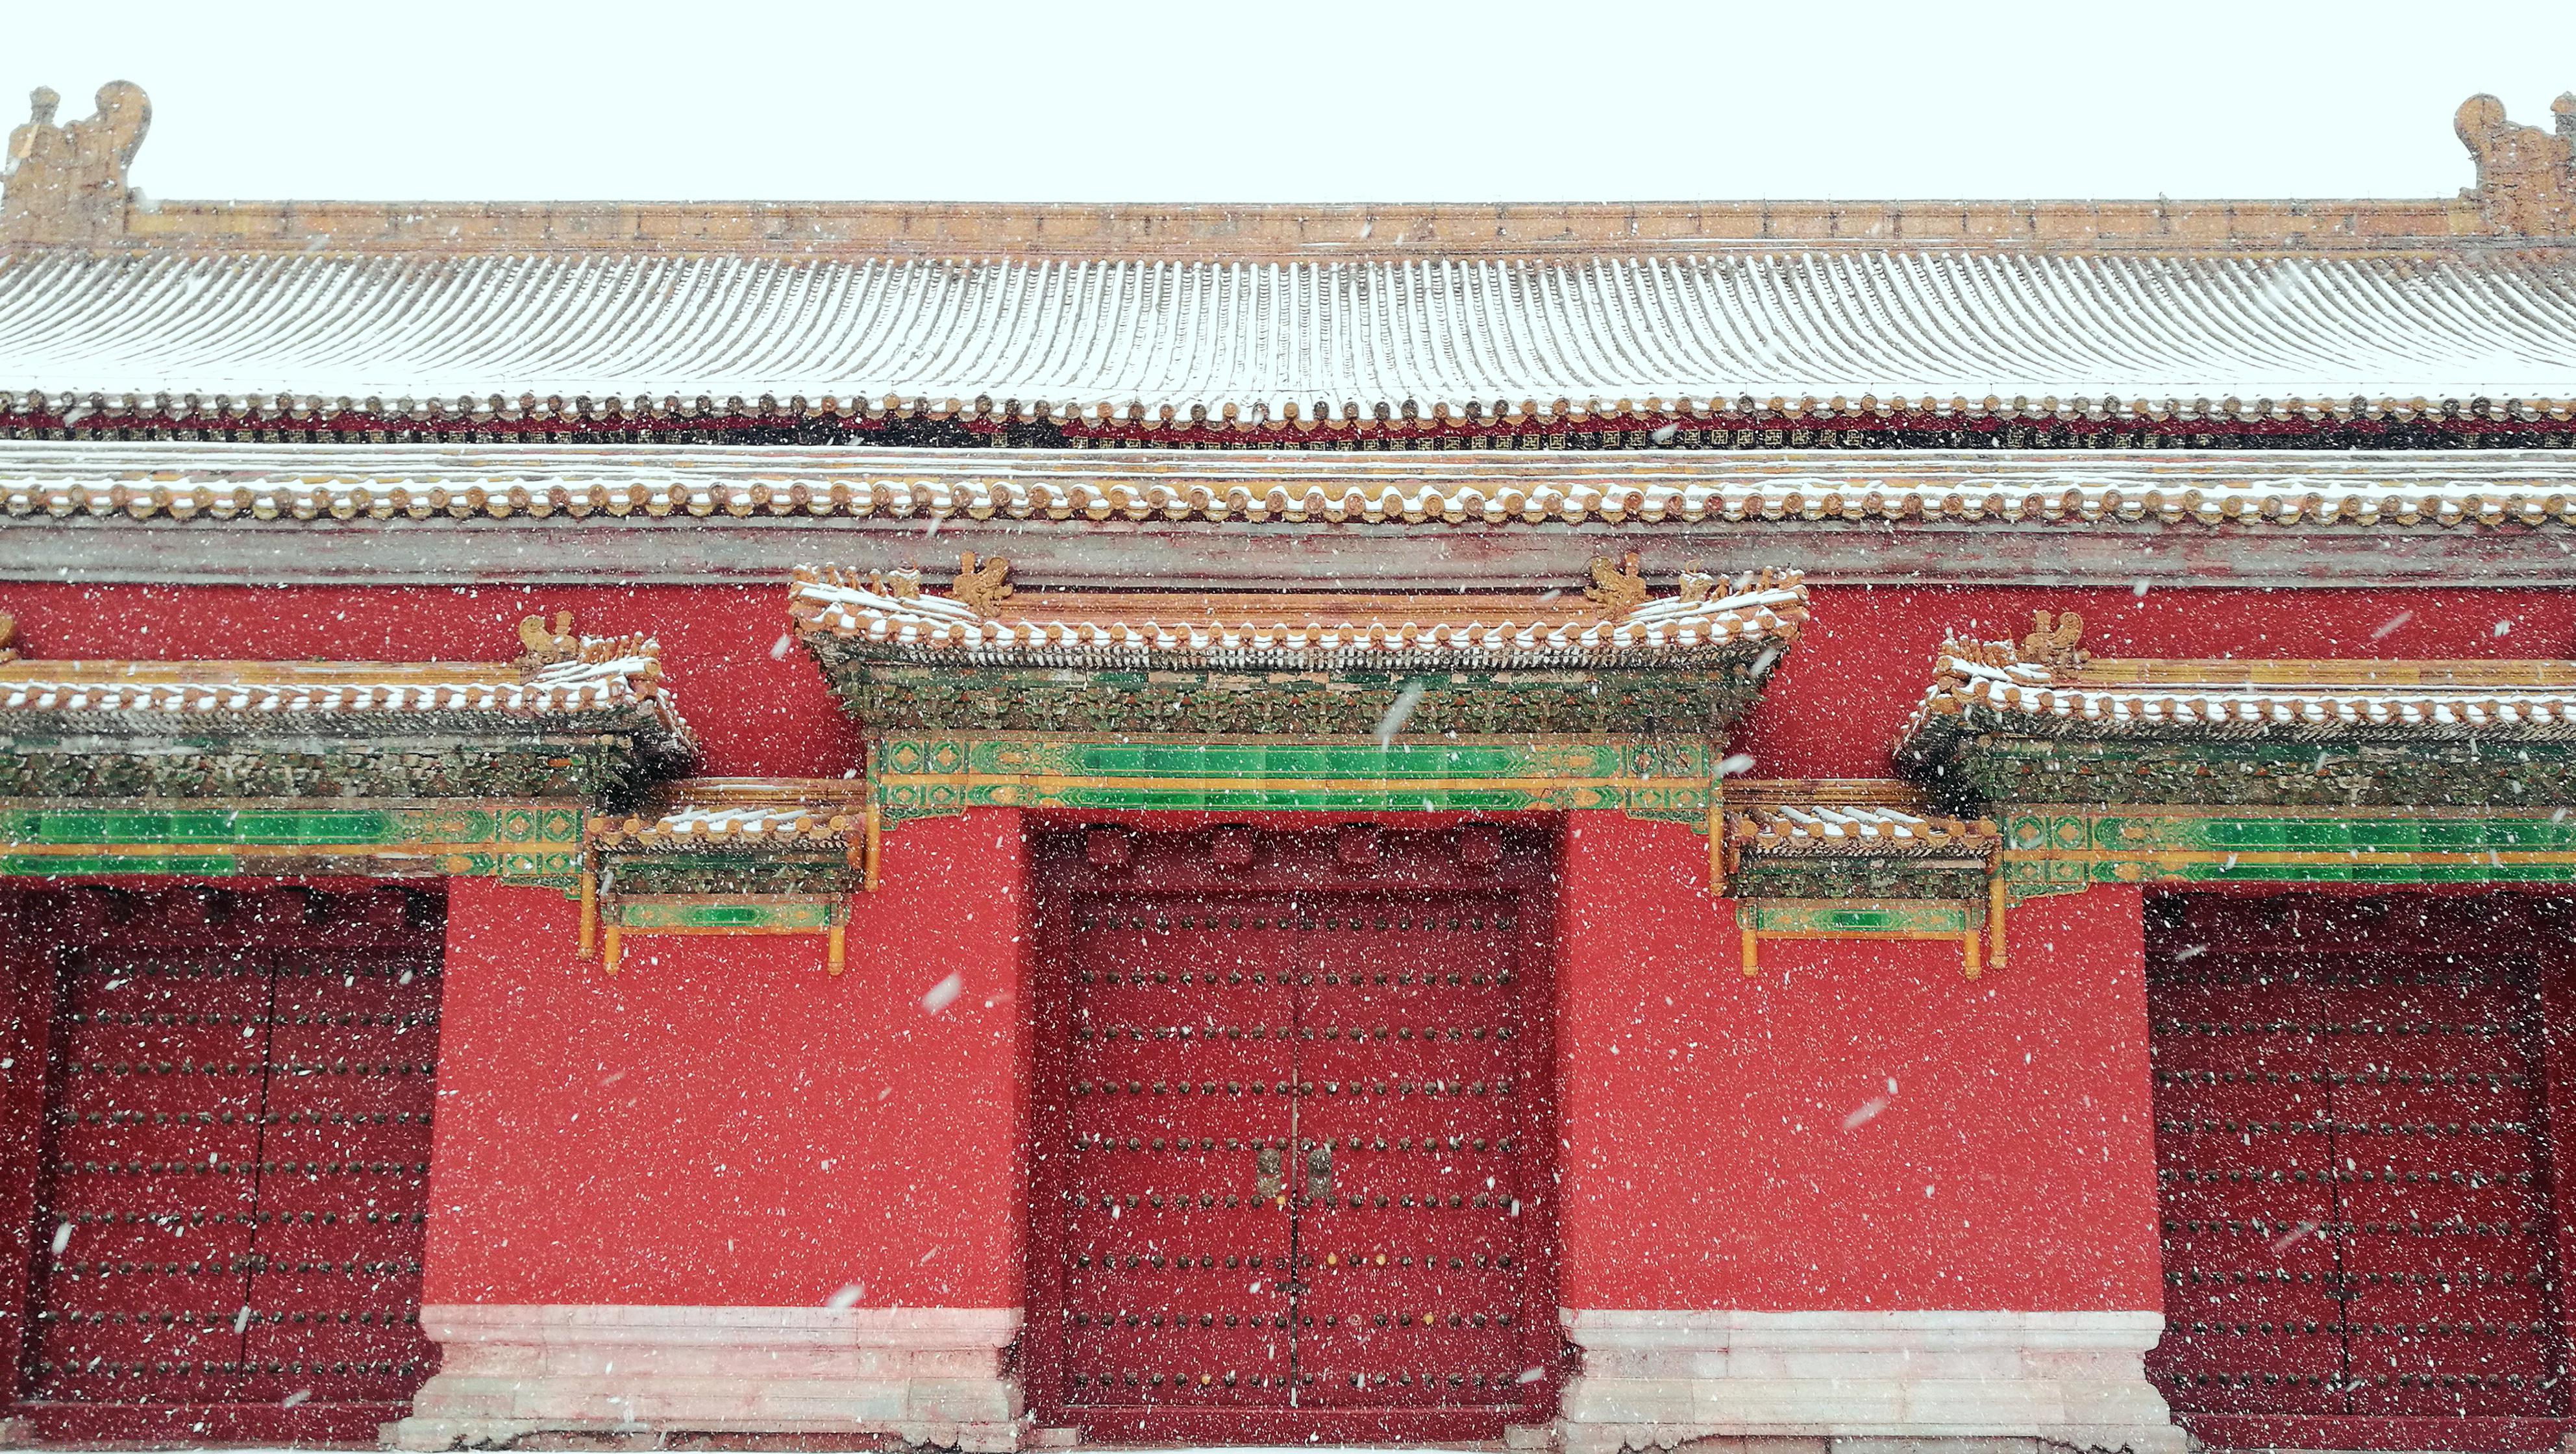 今日北京雪大,红墙绿瓦新笌